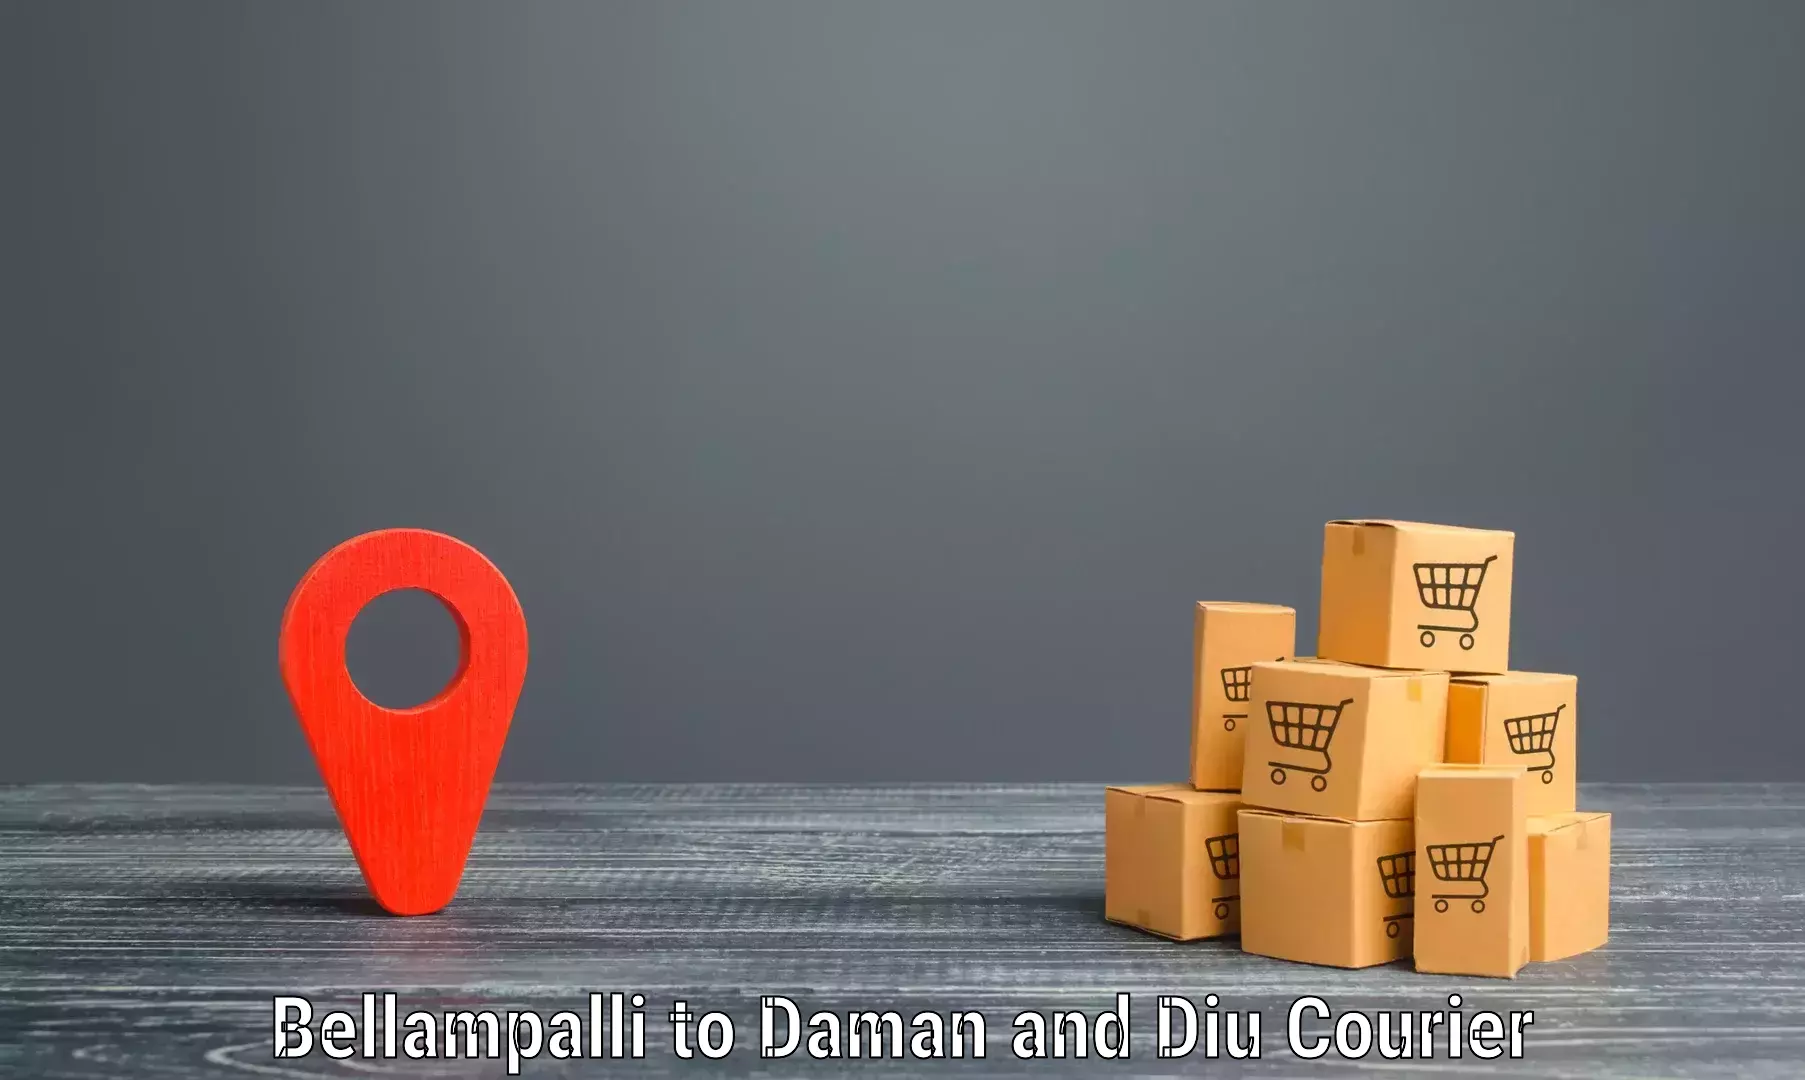 Tech-enabled shipping Bellampalli to Diu